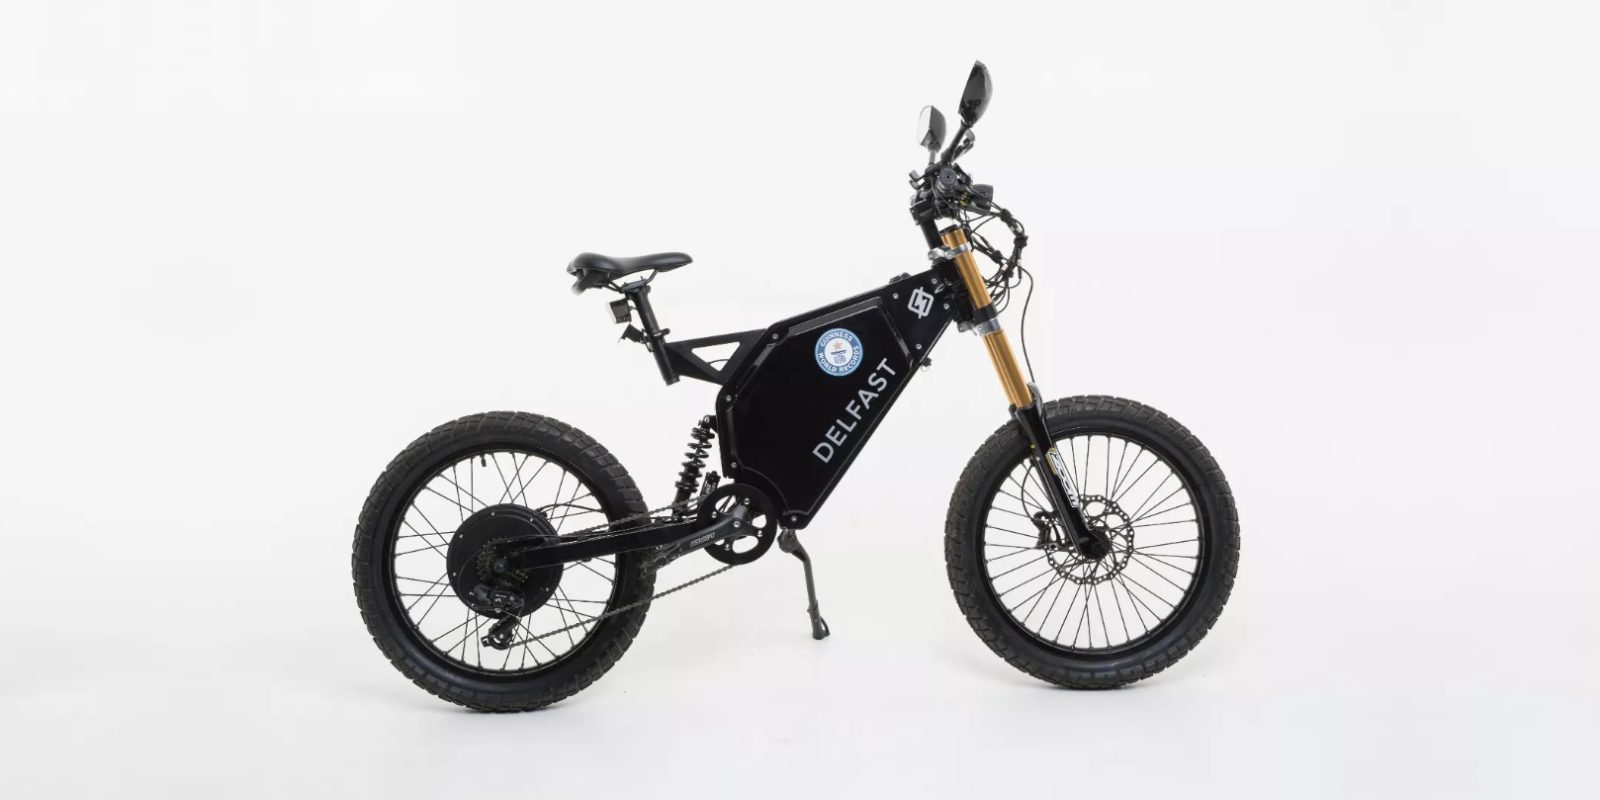 Delfast представляет свои новые электрические мотоциклы